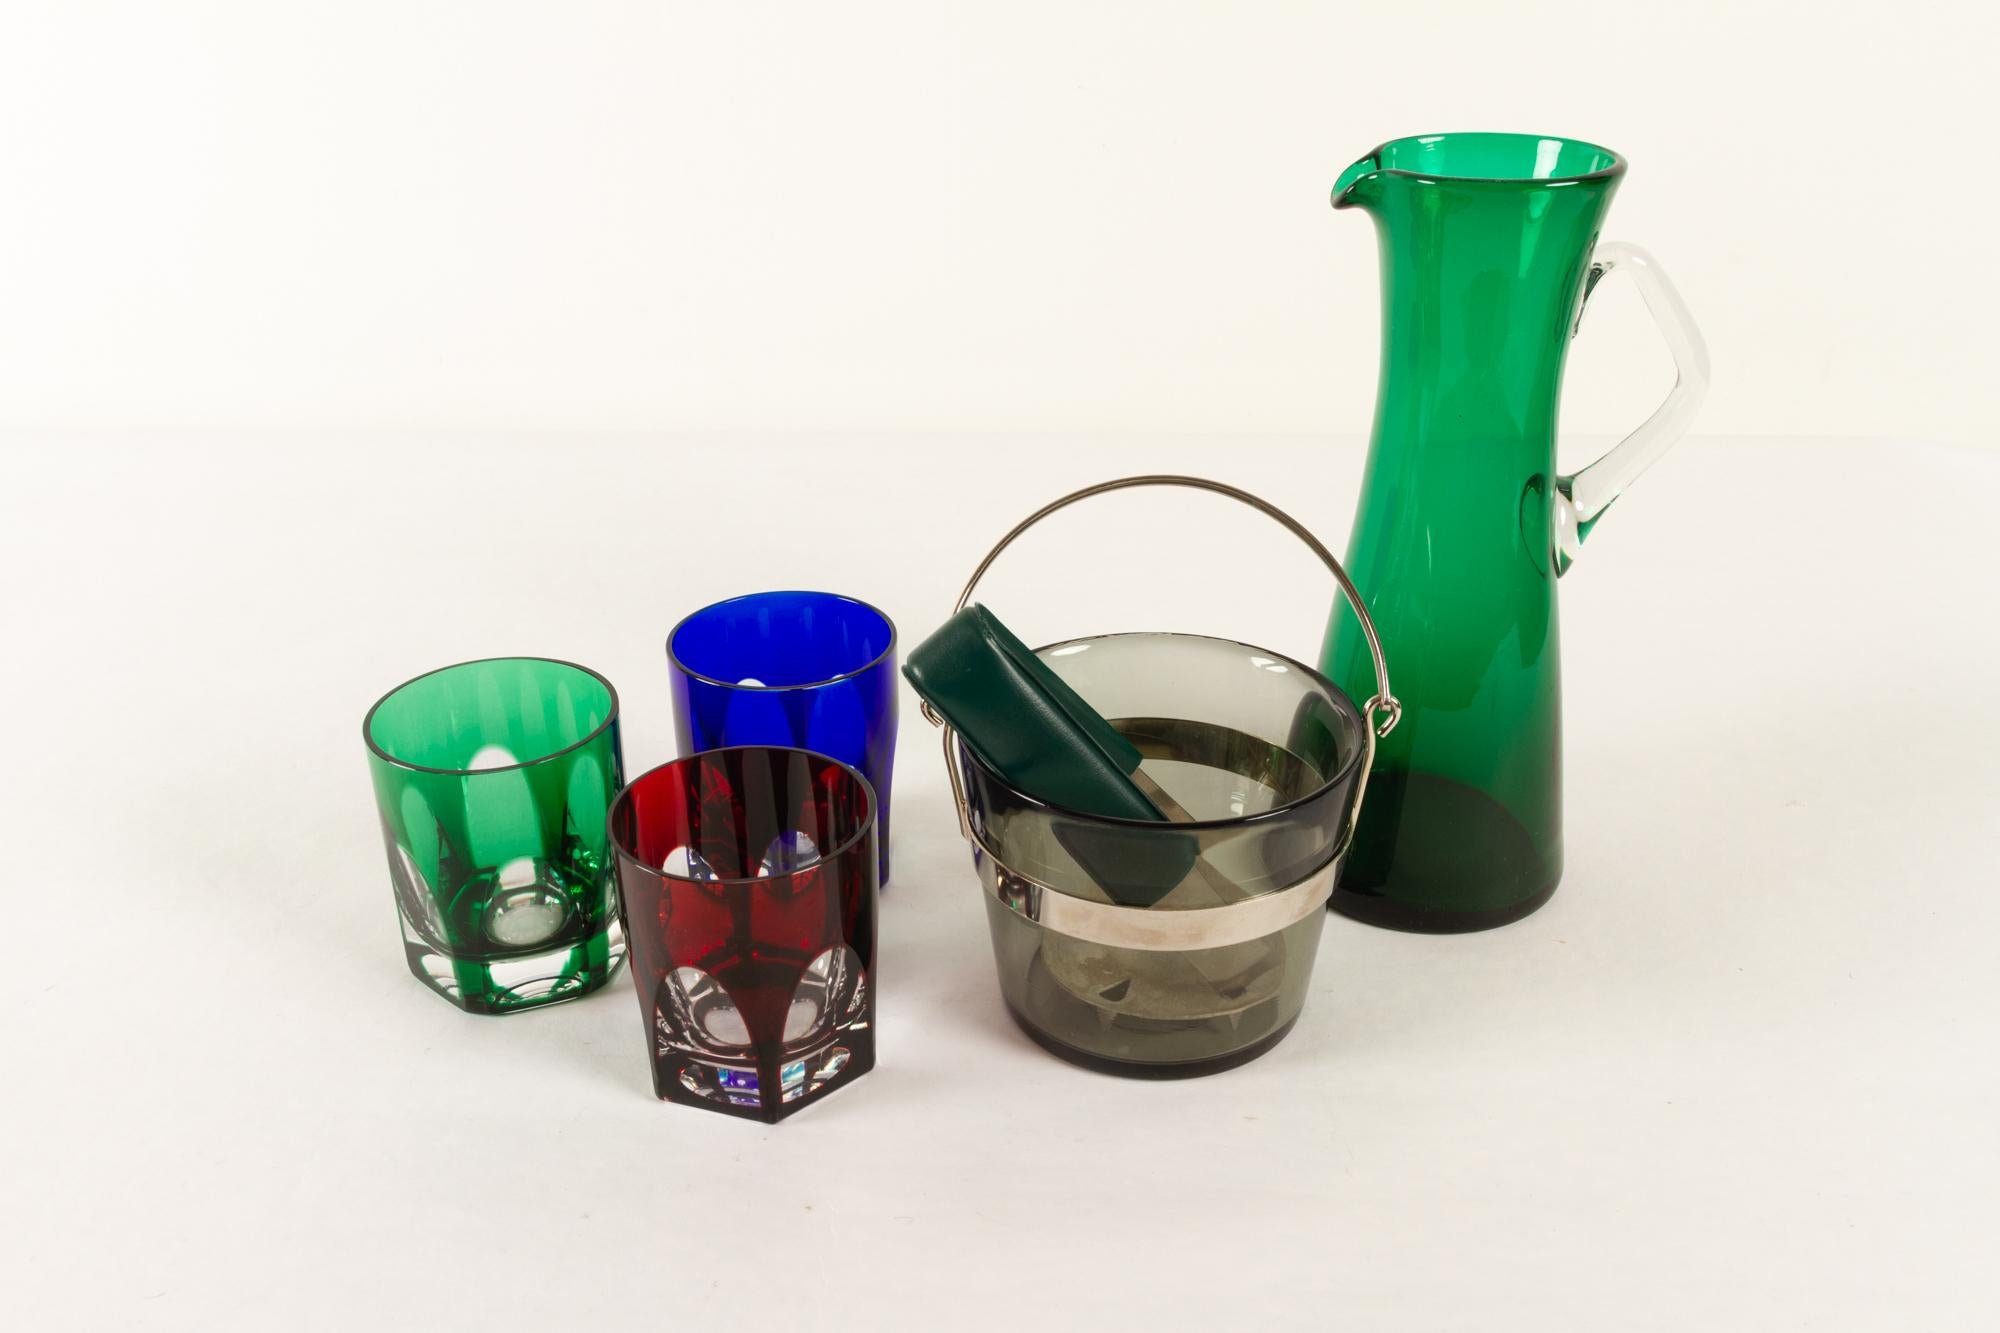 Schwedische Vintage-Glaswaren 1960er Set 5
Modernes Bargeschirr aus der Mitte des Jahrhunderts. Eine stilvolle und farbenfrohe Ergänzung für den Barwagen oder Barschrank.
Dieses Set besteht aus:
1 Krug aus grünem Glas, Höhe 24,5 cm
3